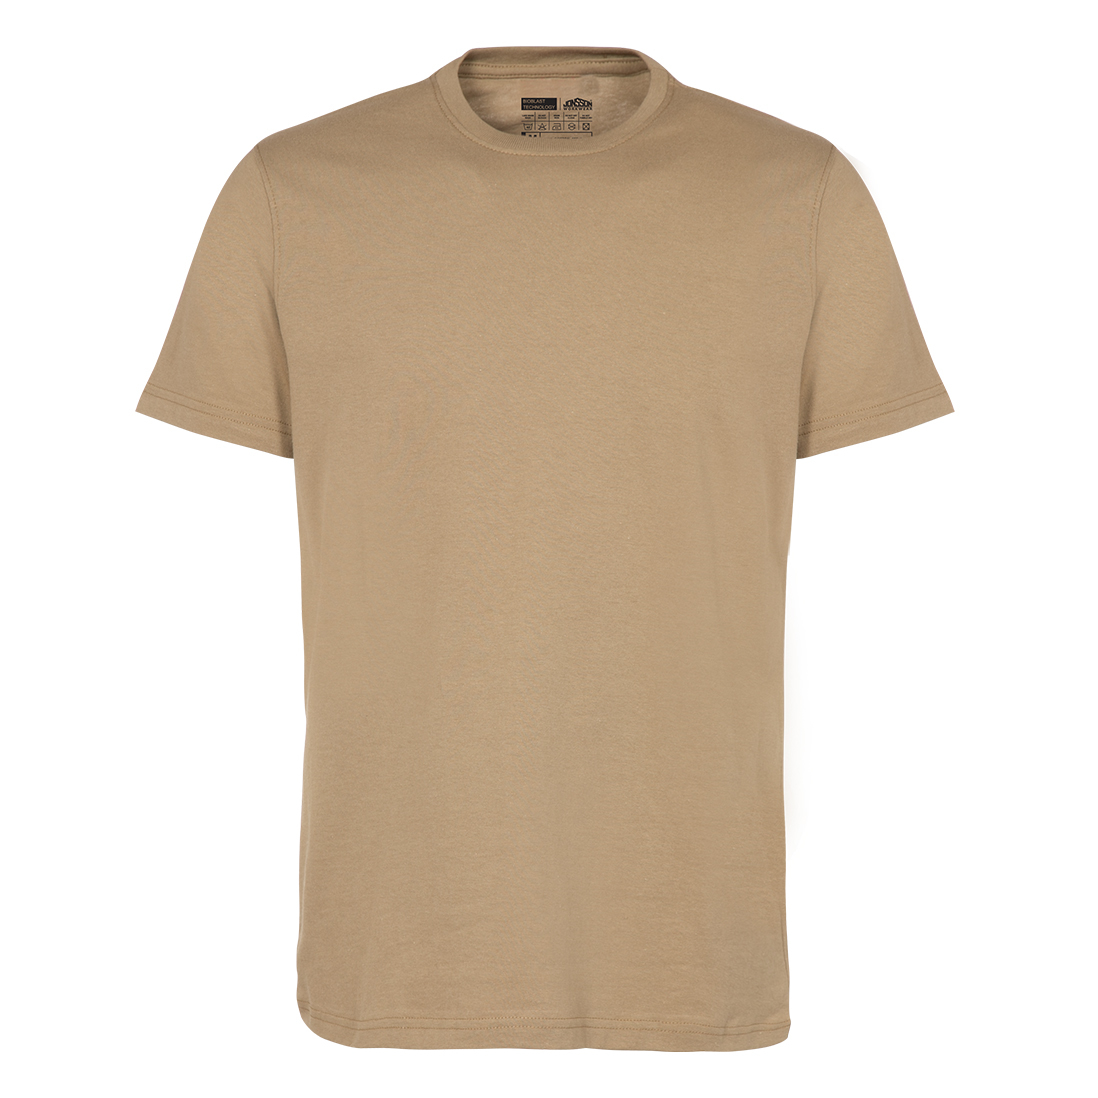 Jonsson Workwear | 100% Cotton Tee Shirt